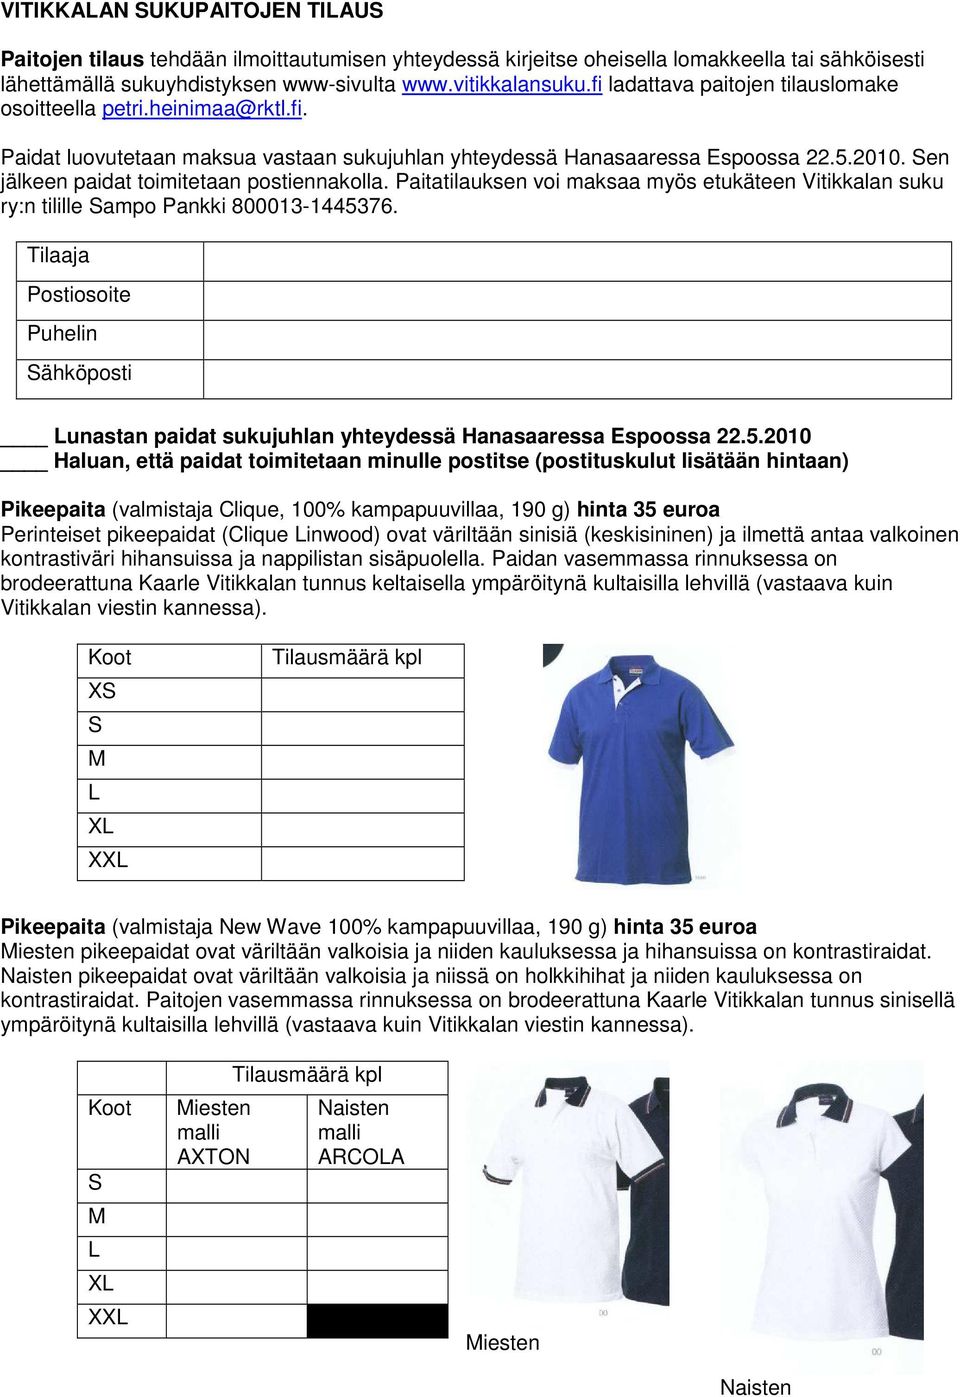 Sen jälkeen paidat toimitetaan postiennakolla. Paitatilauksen voi maksaa myös etukäteen Vitikkalan suku ry:n tilille Sampo Pankki 800013-1445376.